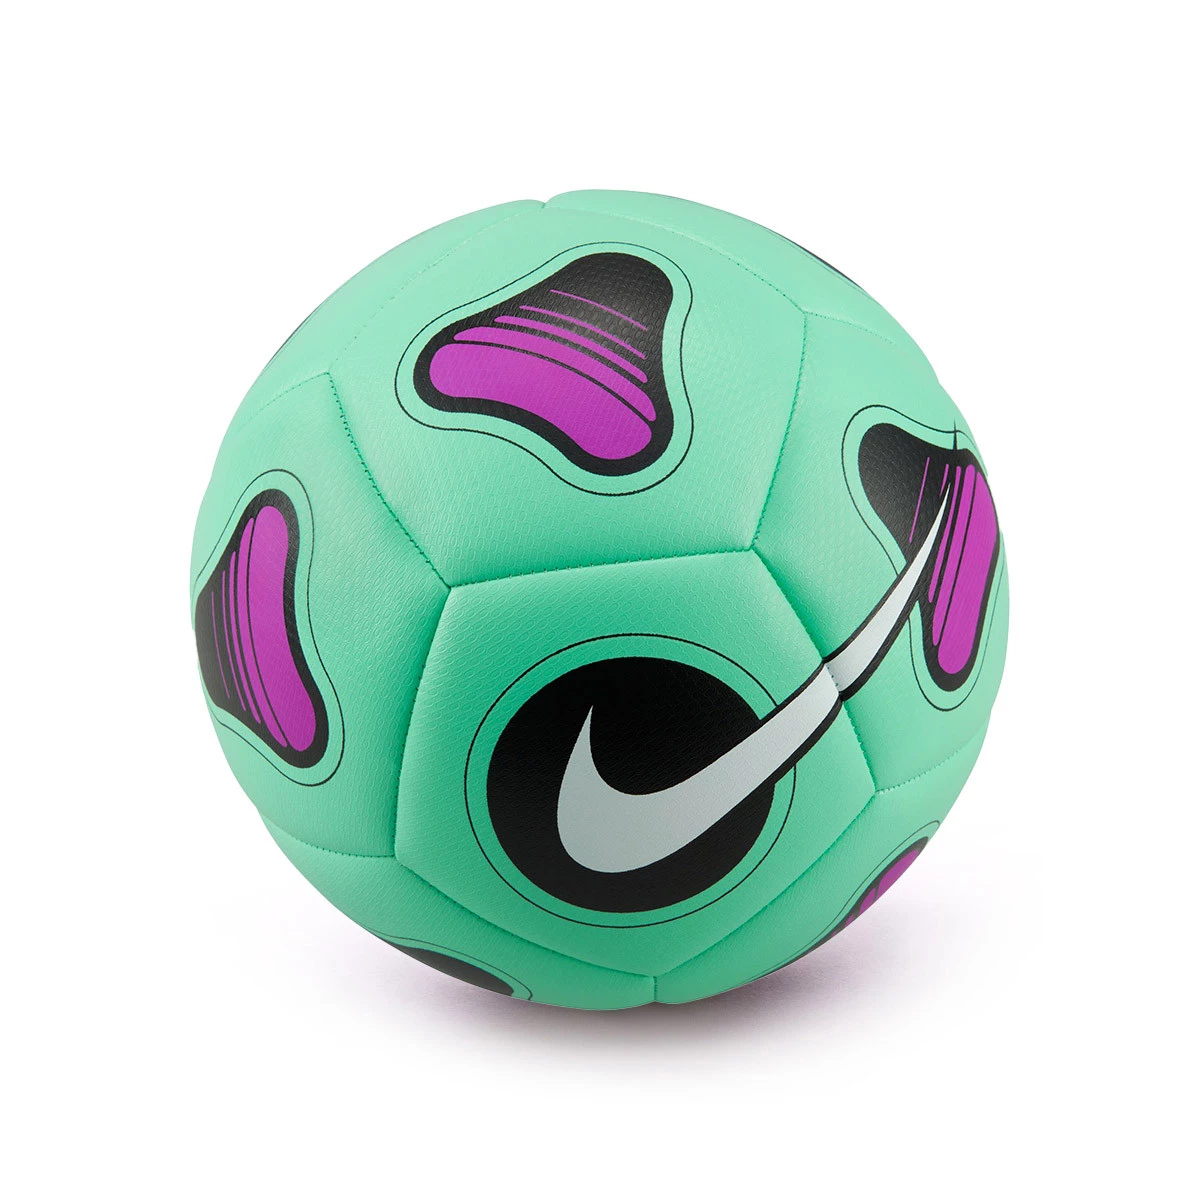 Balones y pelotas de fútbol - Fútbol Emotion